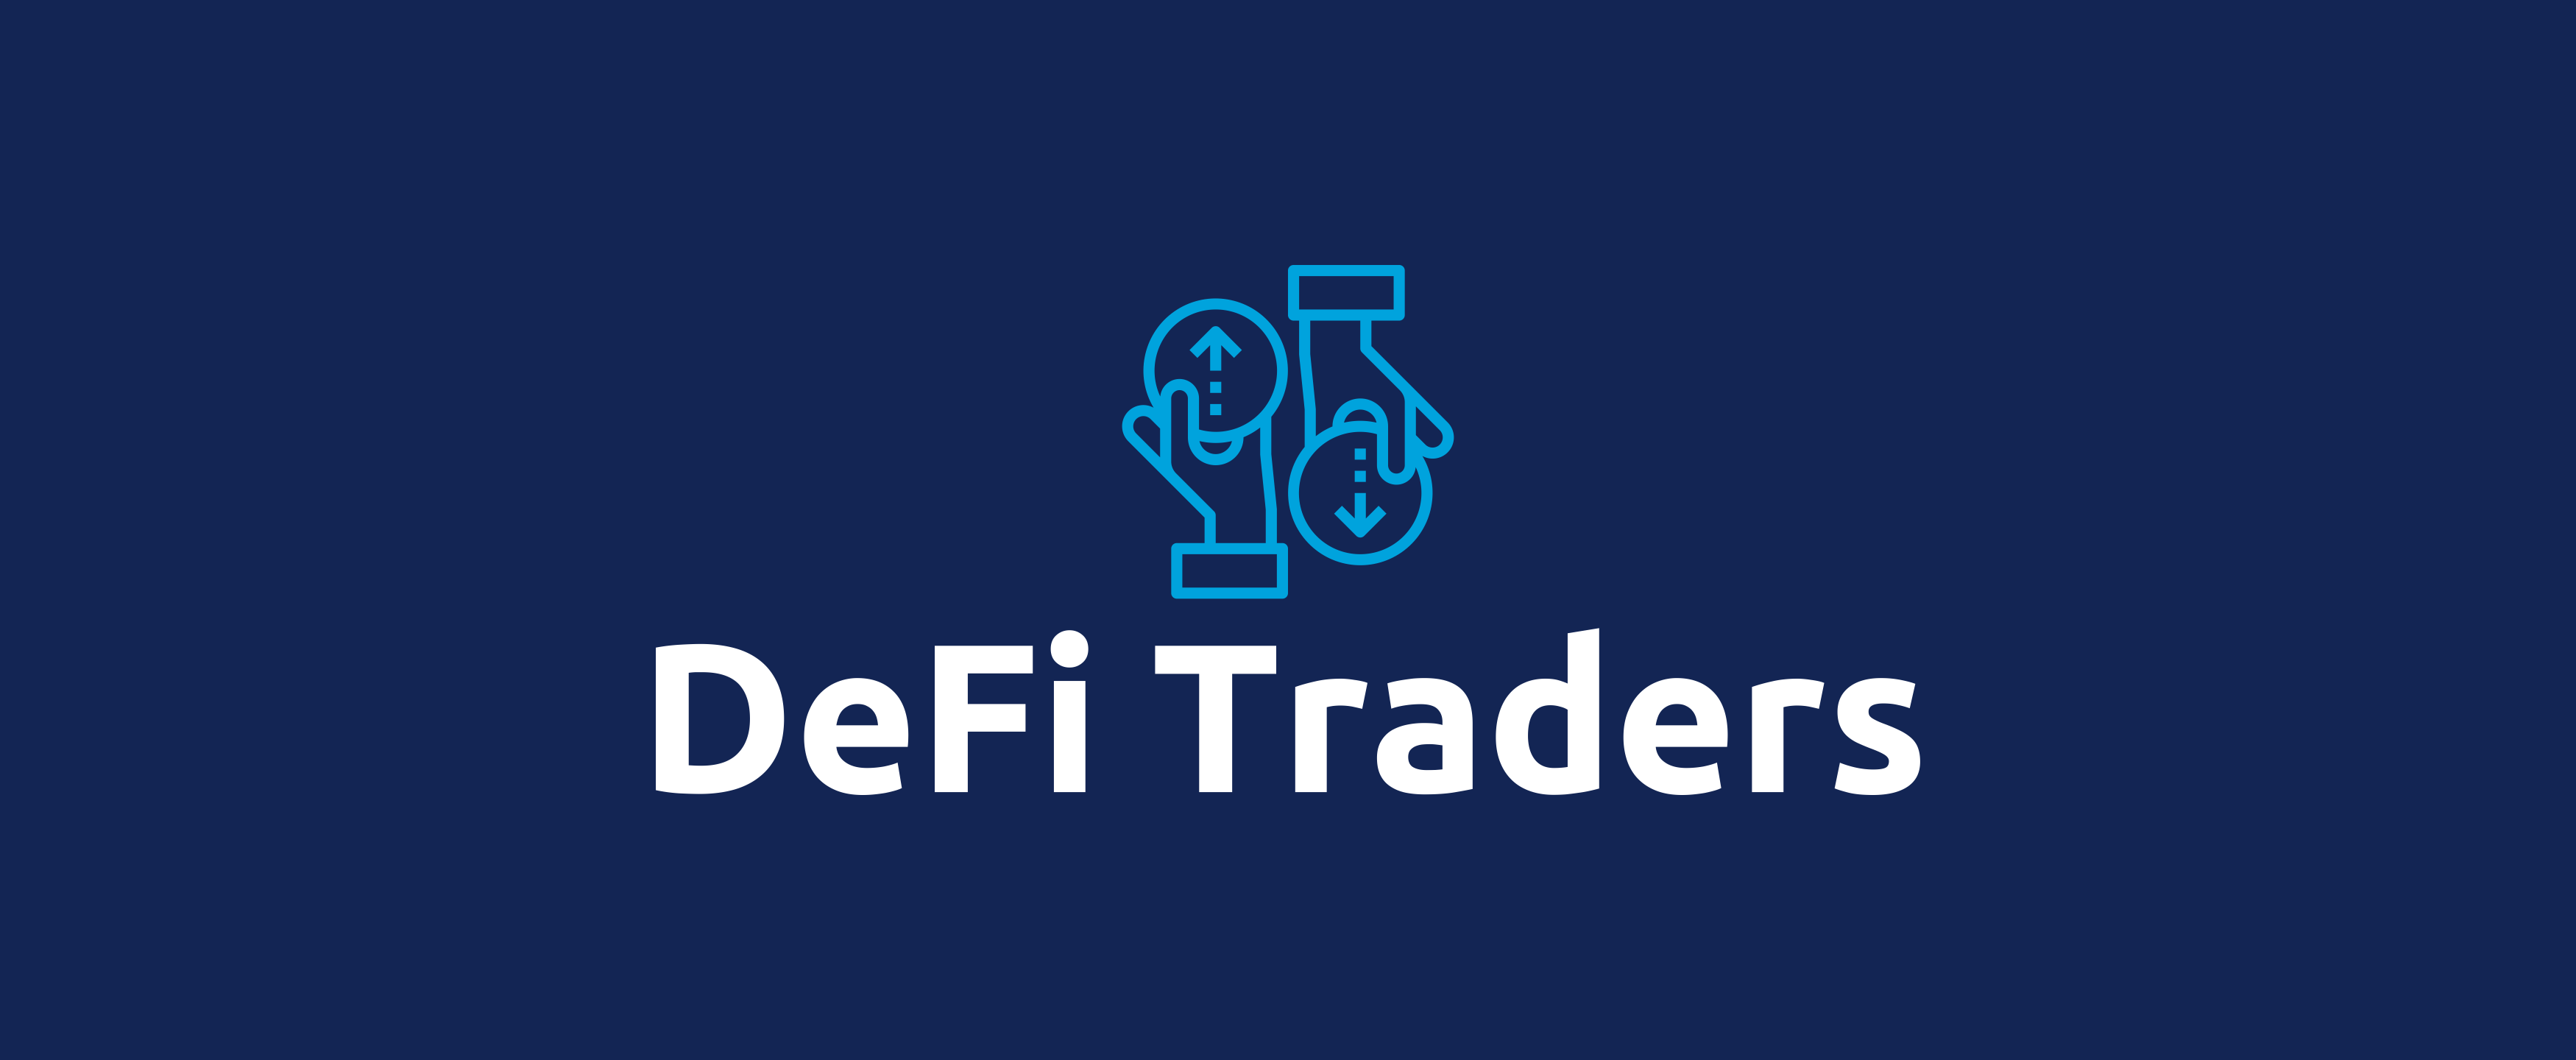 DeFi Traders